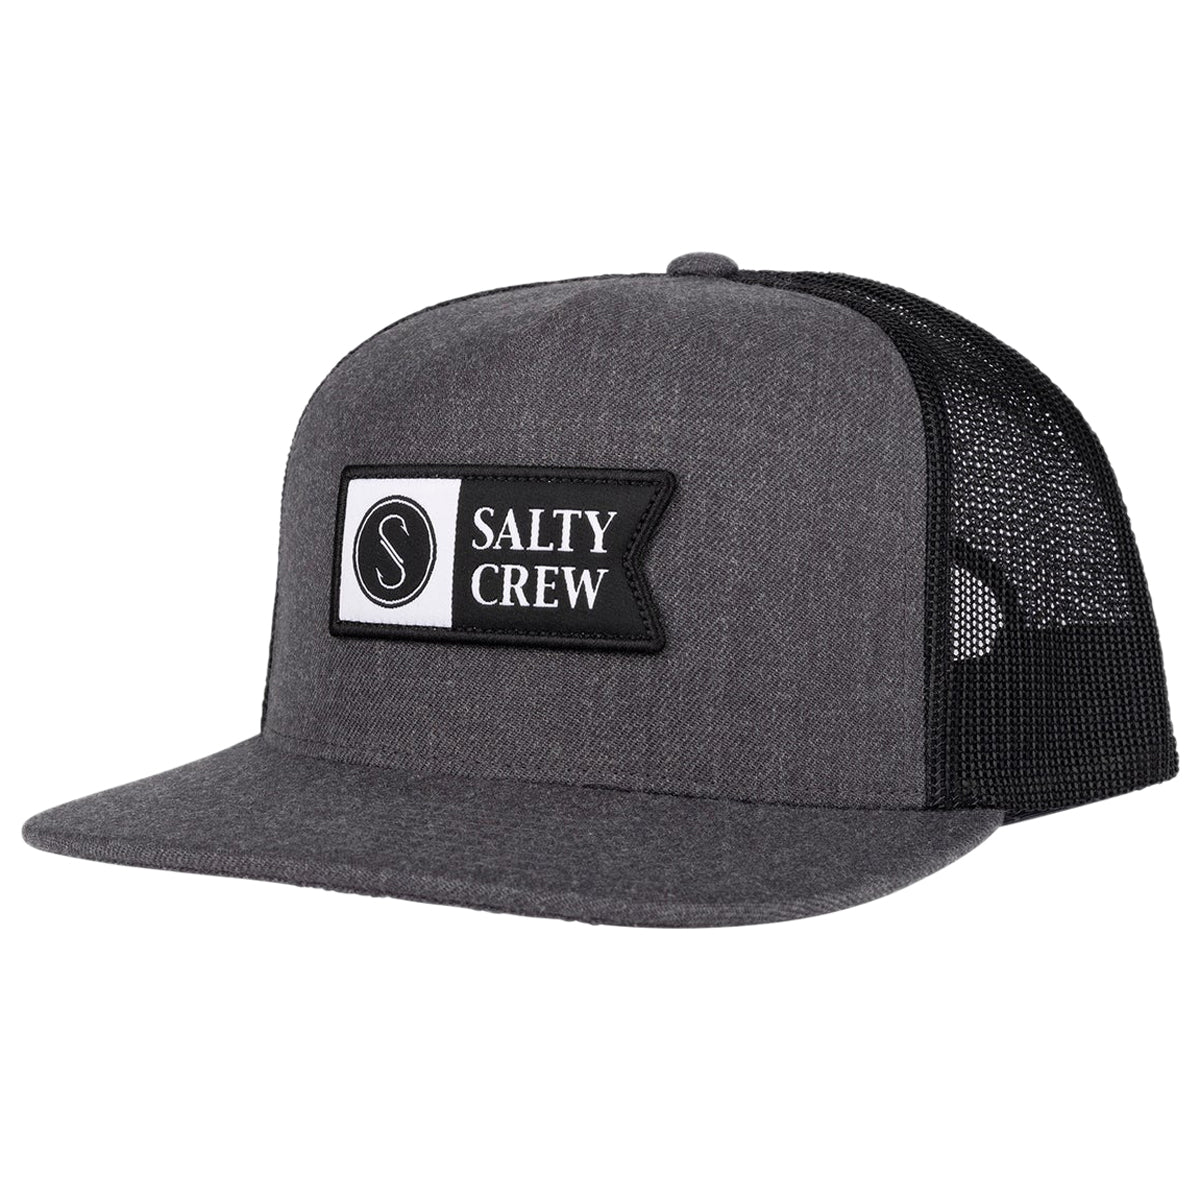 Salty Crew Alpha Twill Trucker Hat - Dark Heather Grey image 1